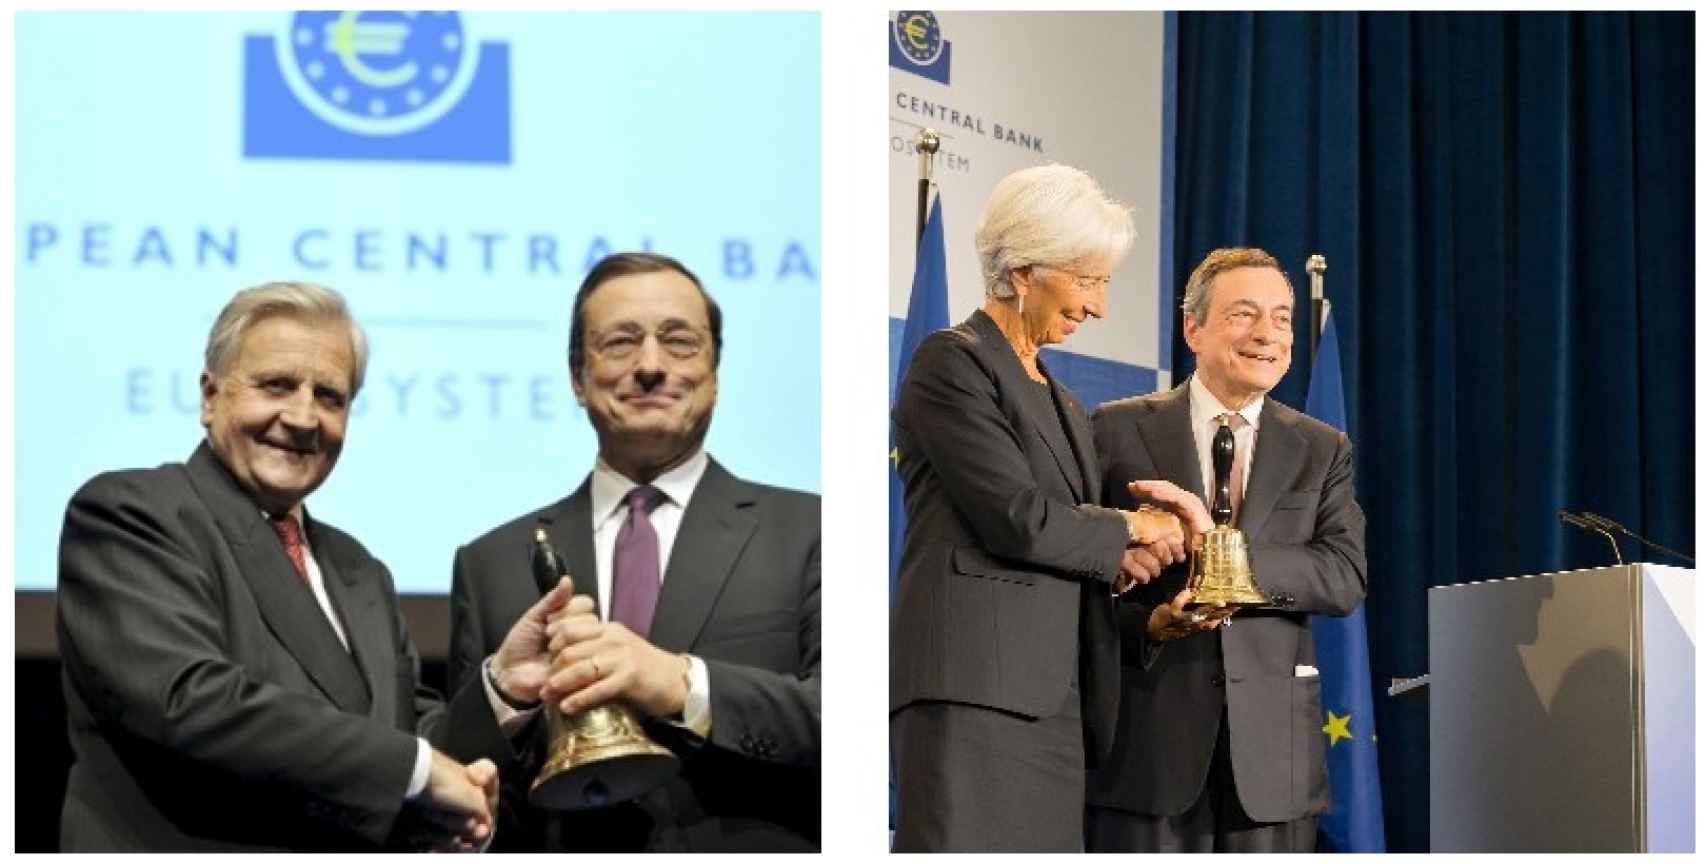 Jean Claude Trichet cede el testigo a Mario Draghi (2011) y este a Christine Lagarde (2019).